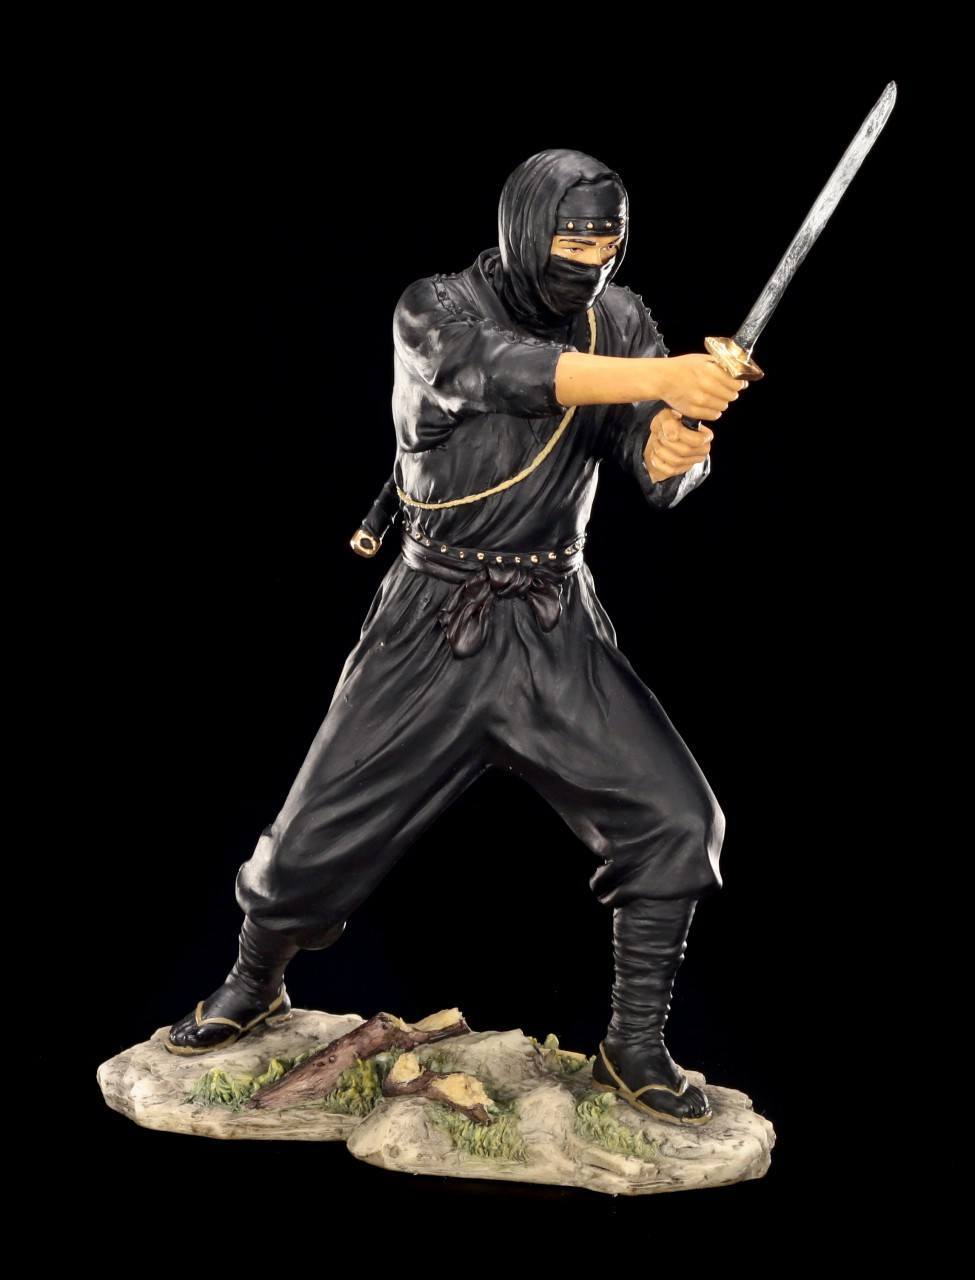 Ninja Figur - Angriff mit Katana Schwert